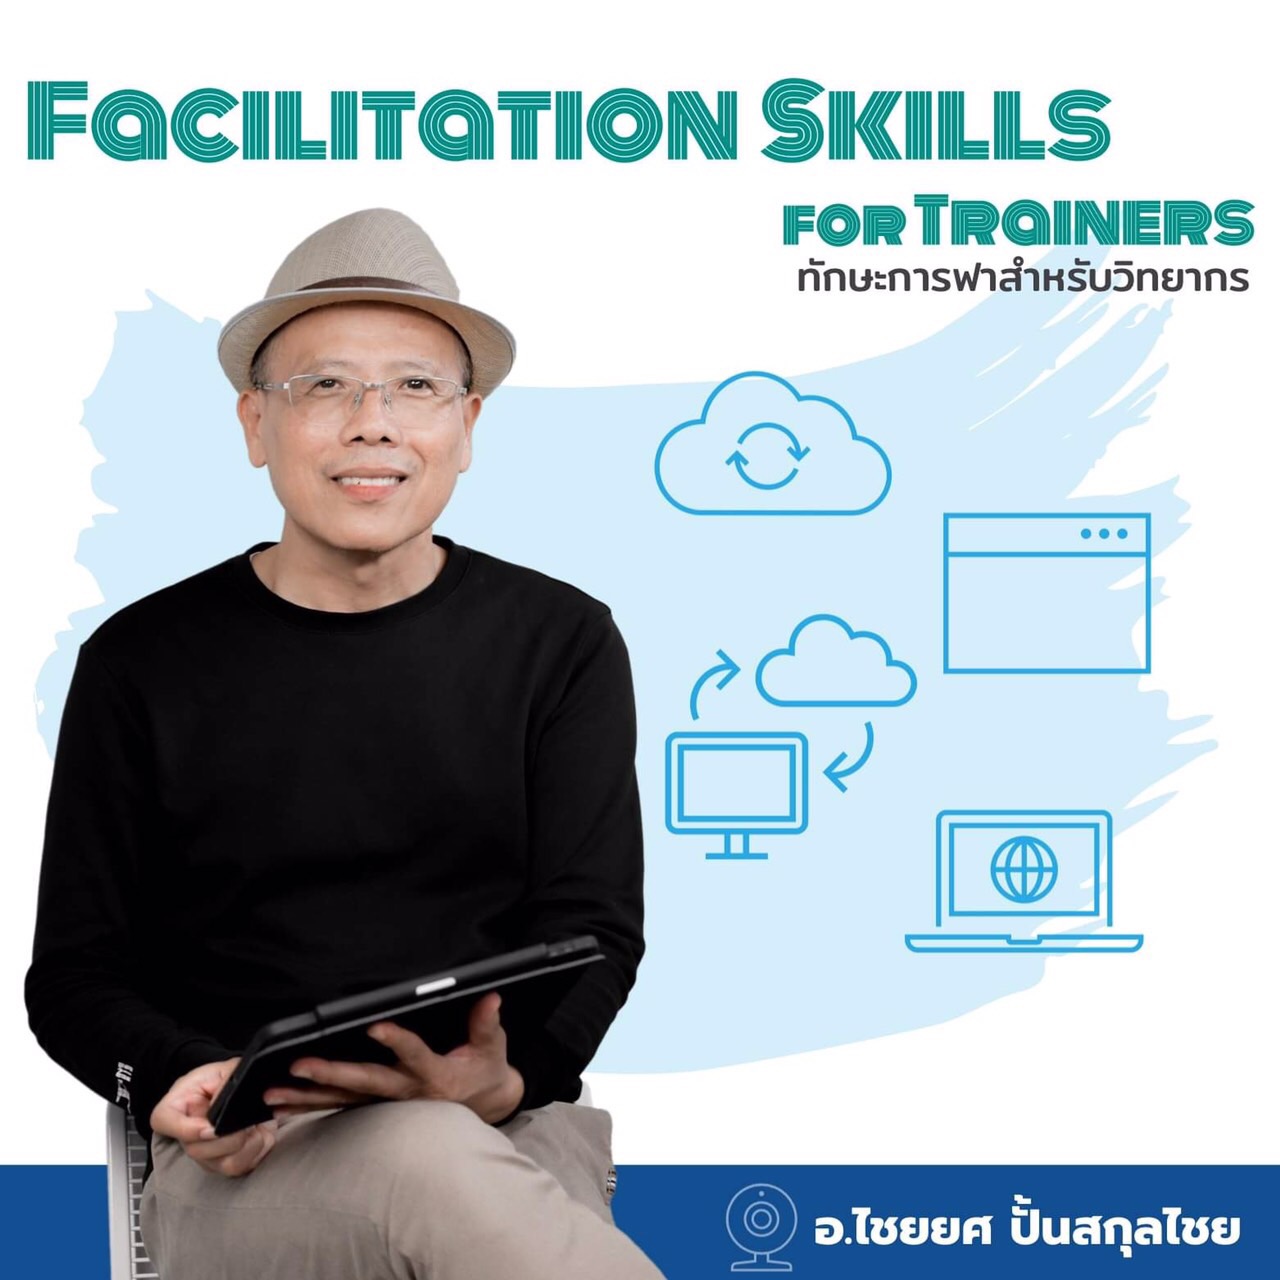 หลักสูตรอบรม Facilitation Skills for Trainers ทักษะการฟาสำหรับวิทยากร โดย ไชยยศ ปั้นสกุลไชย